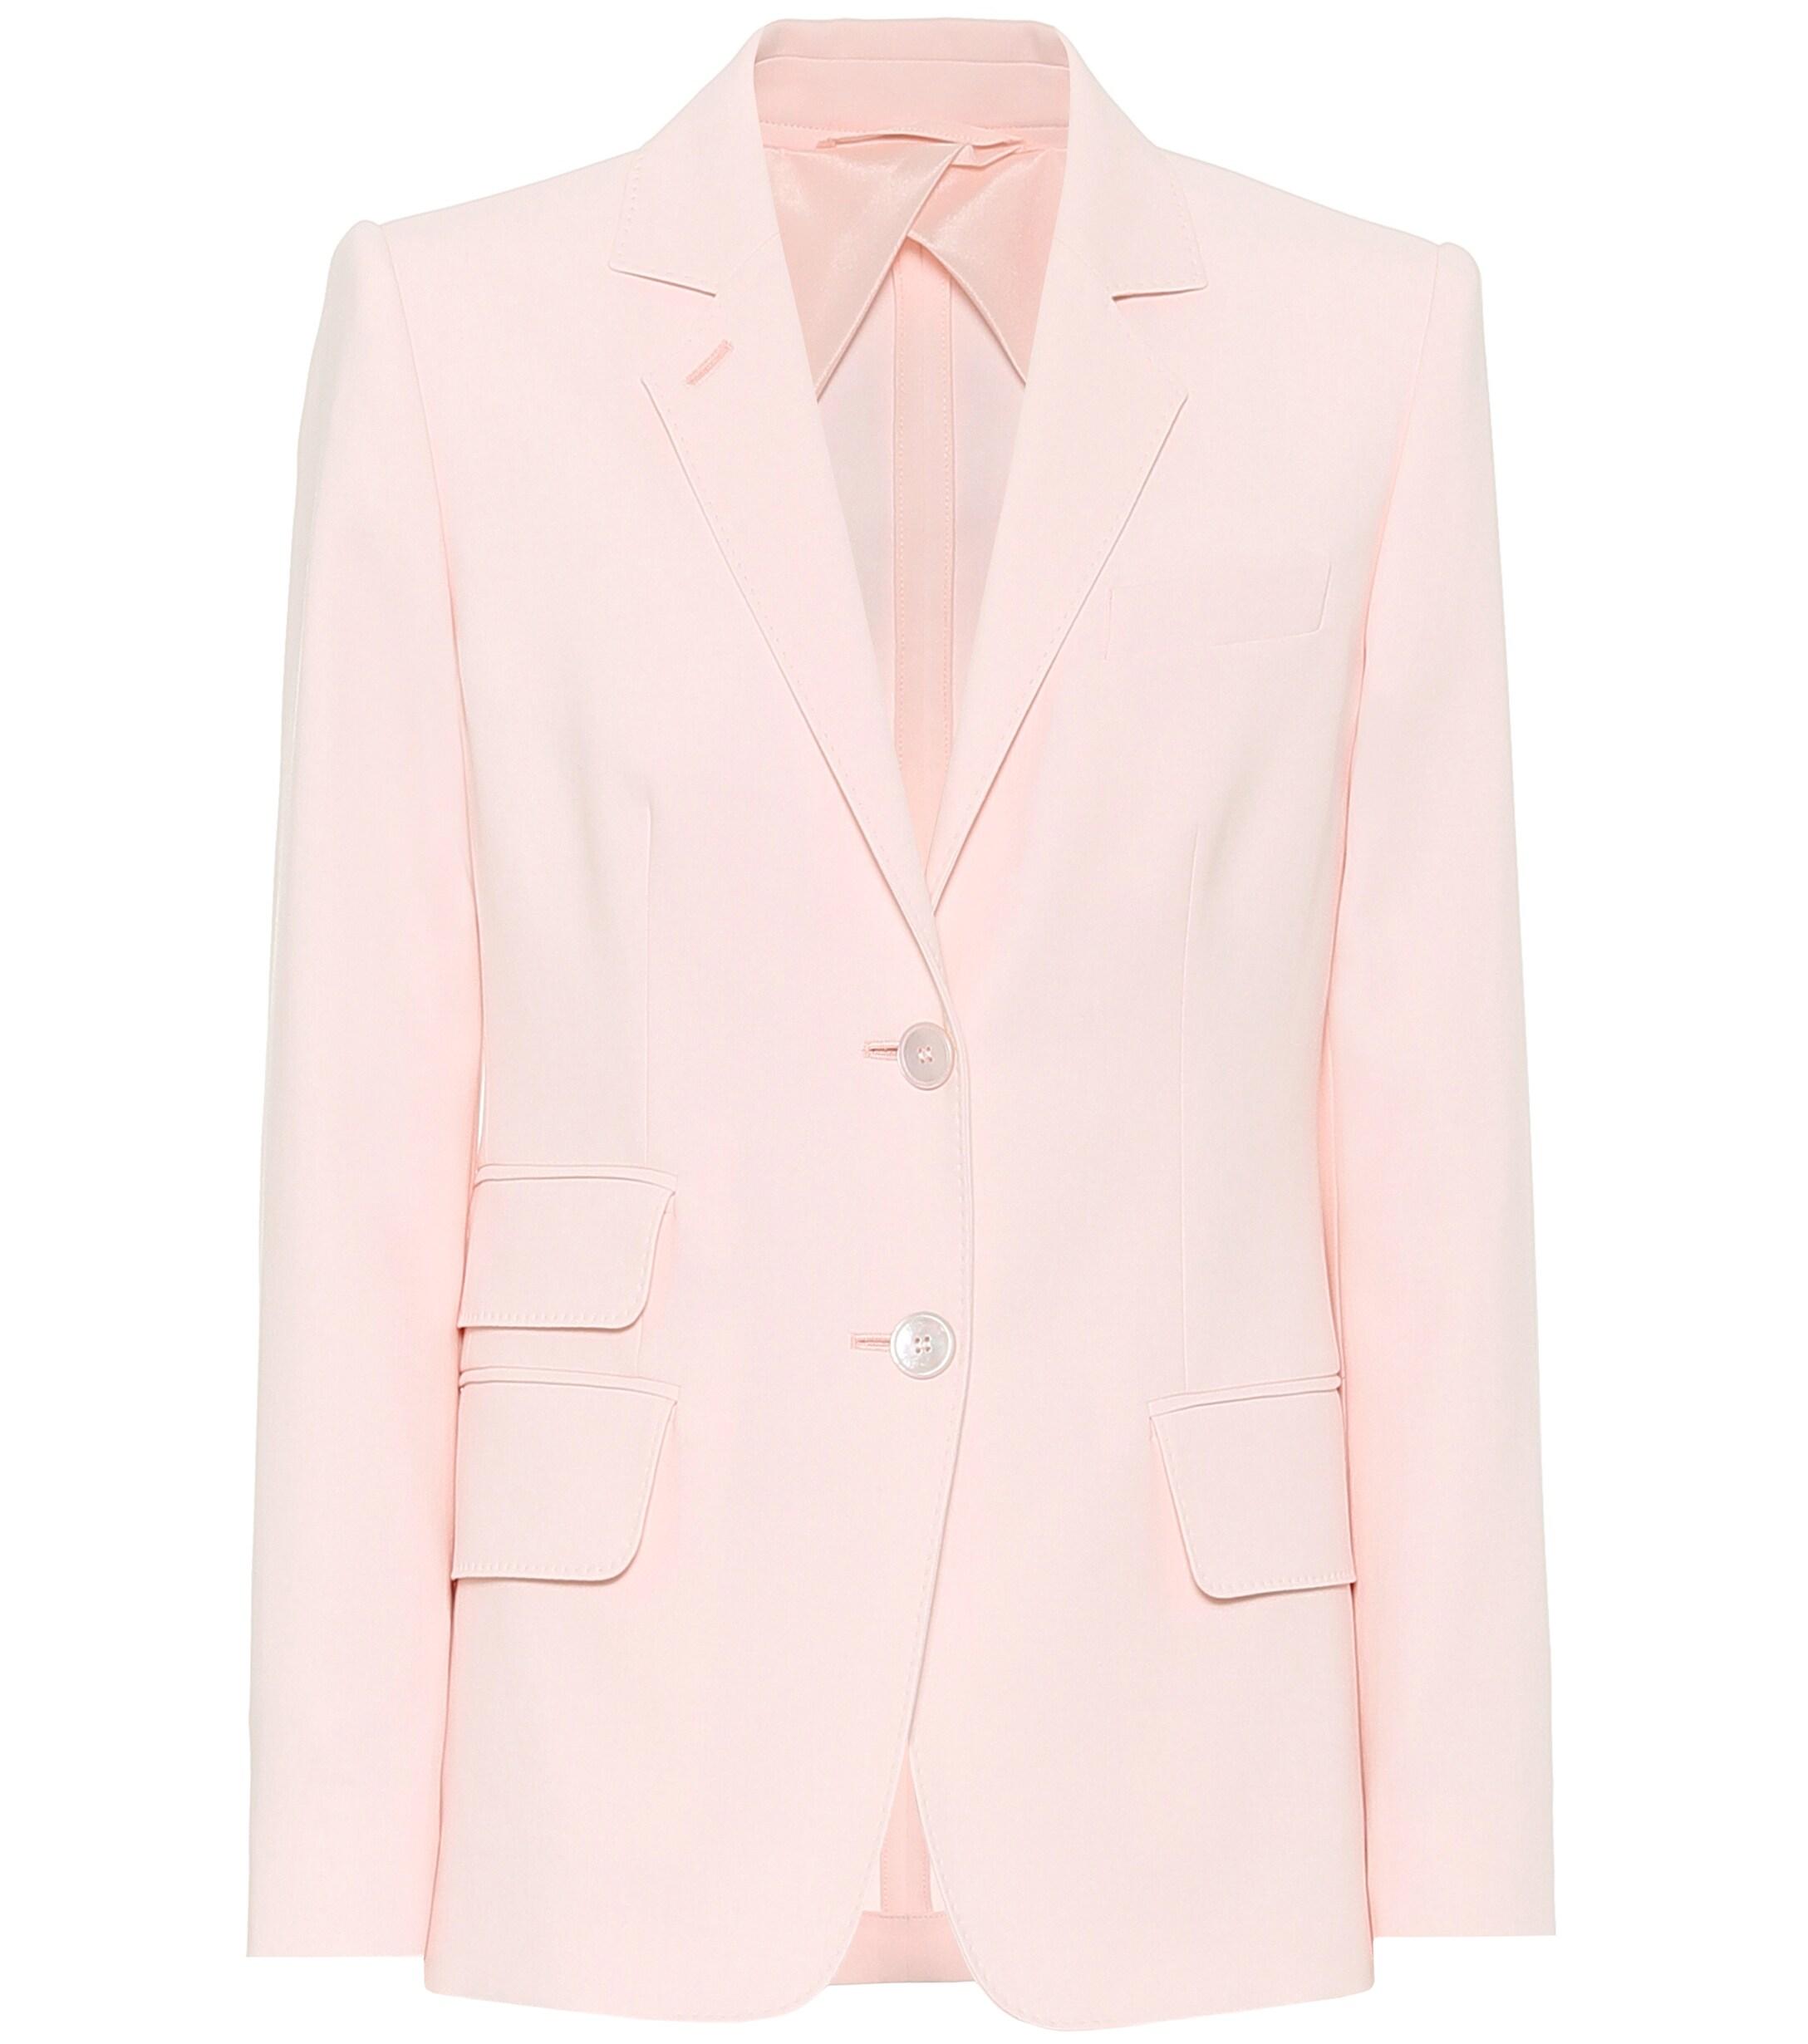 Max Mara Adele Cotton Blazer in Pink - Lyst